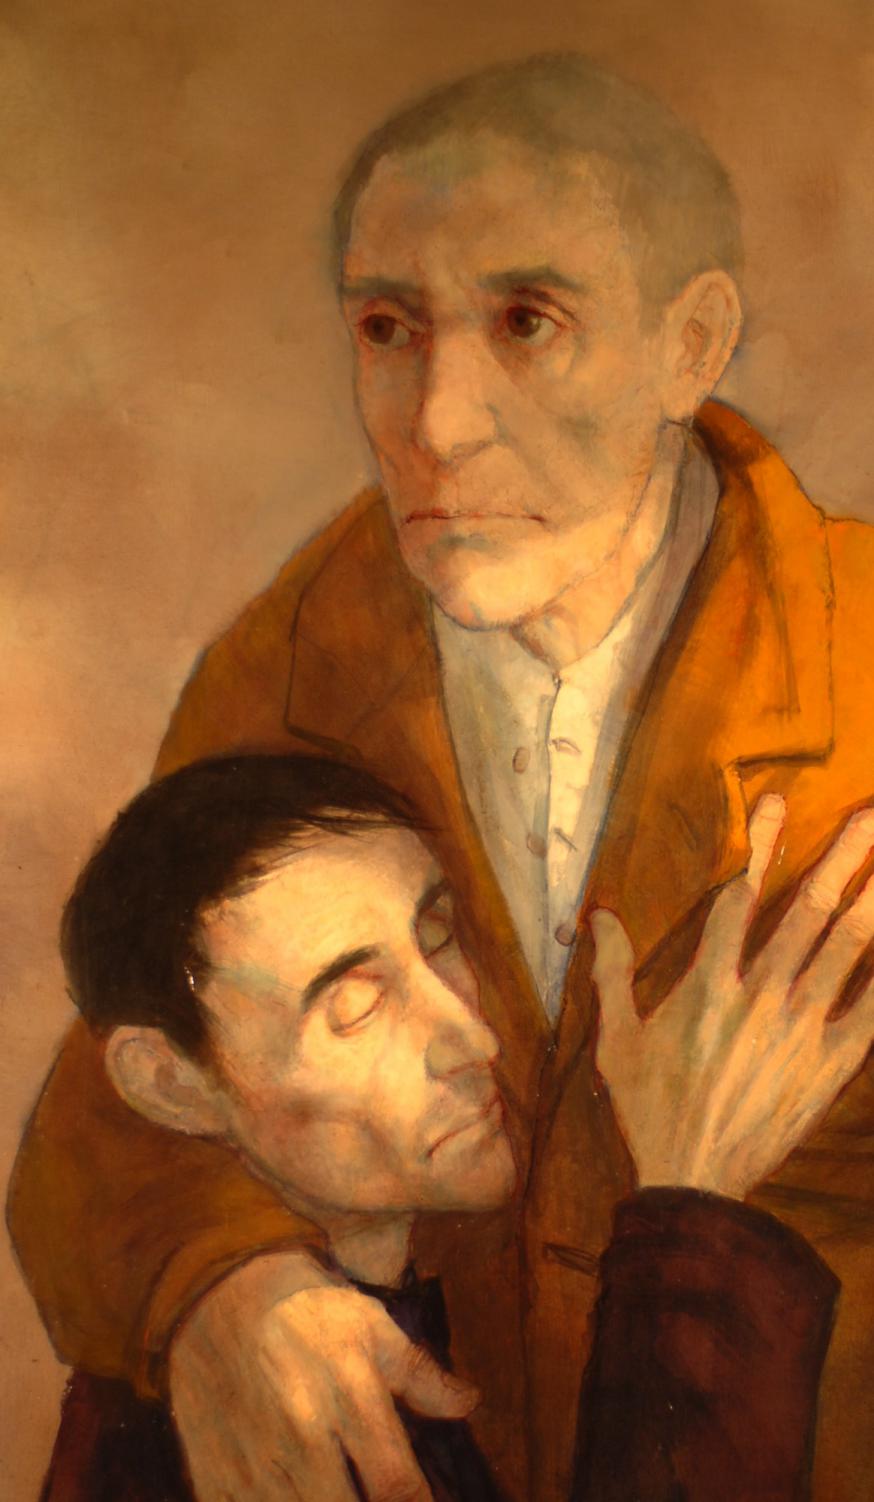 Le retour de l’enfant prodigue - M. Ciry, 1966, olieverf op schilderdoek, 161 cm op 97 cm. © BBK - M. Ciry